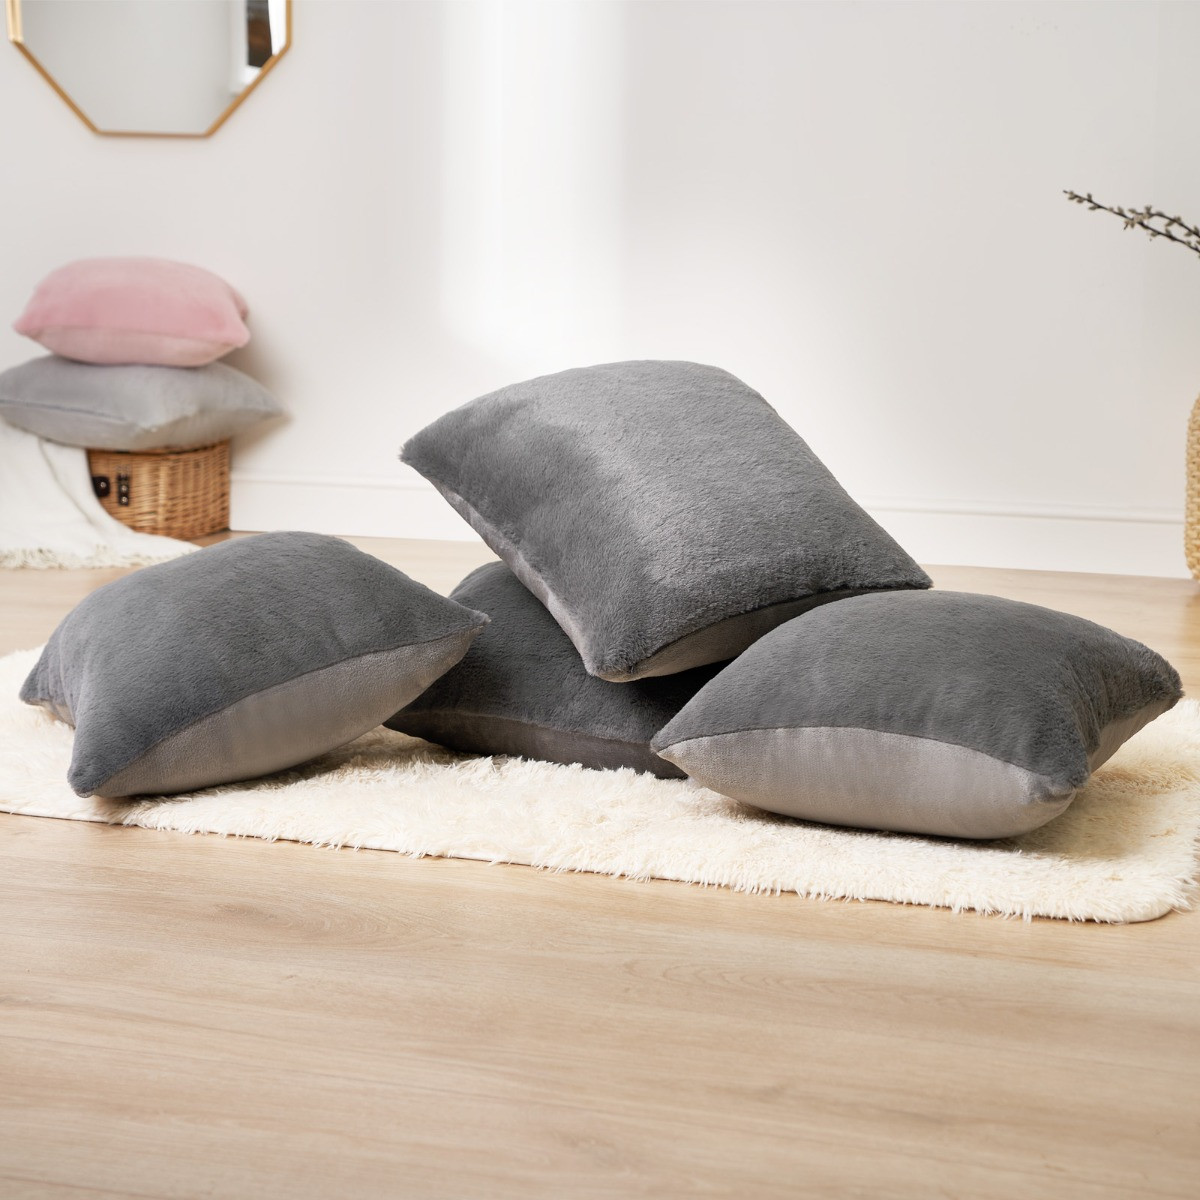 Sienna Faux Fur Cushion Covers - Charcoal>